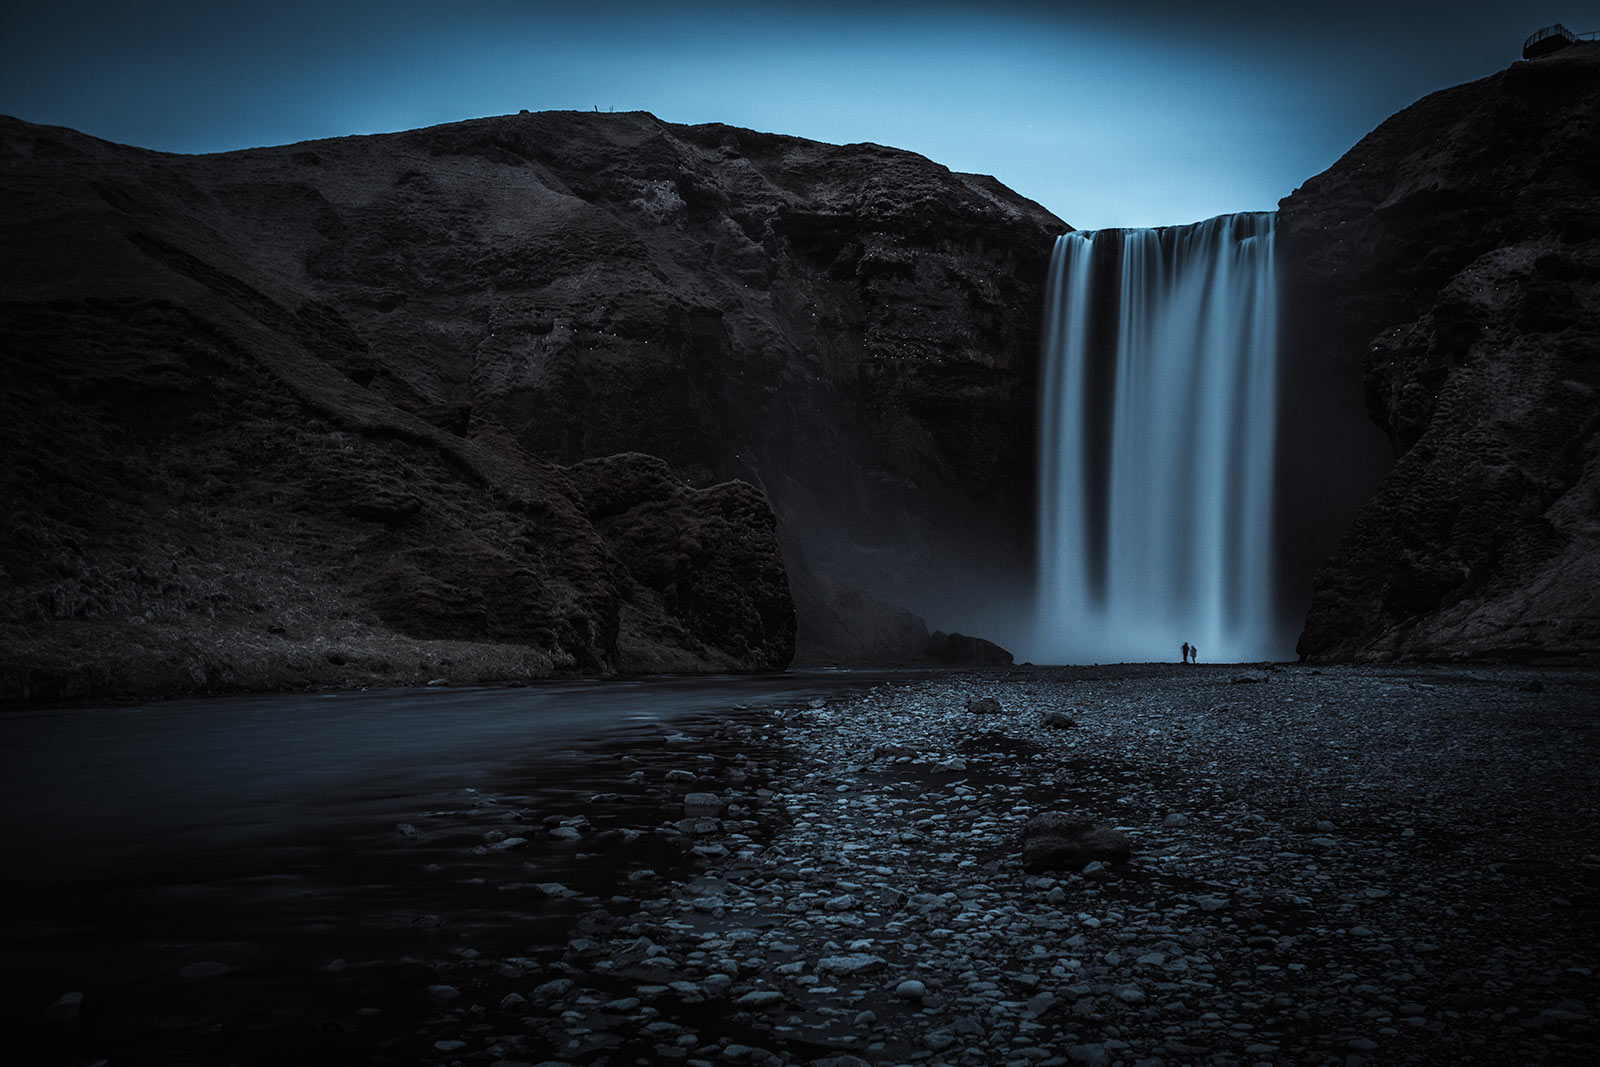 Island - fotografischer Rundtrip durch das Land aus Feuer und Eis